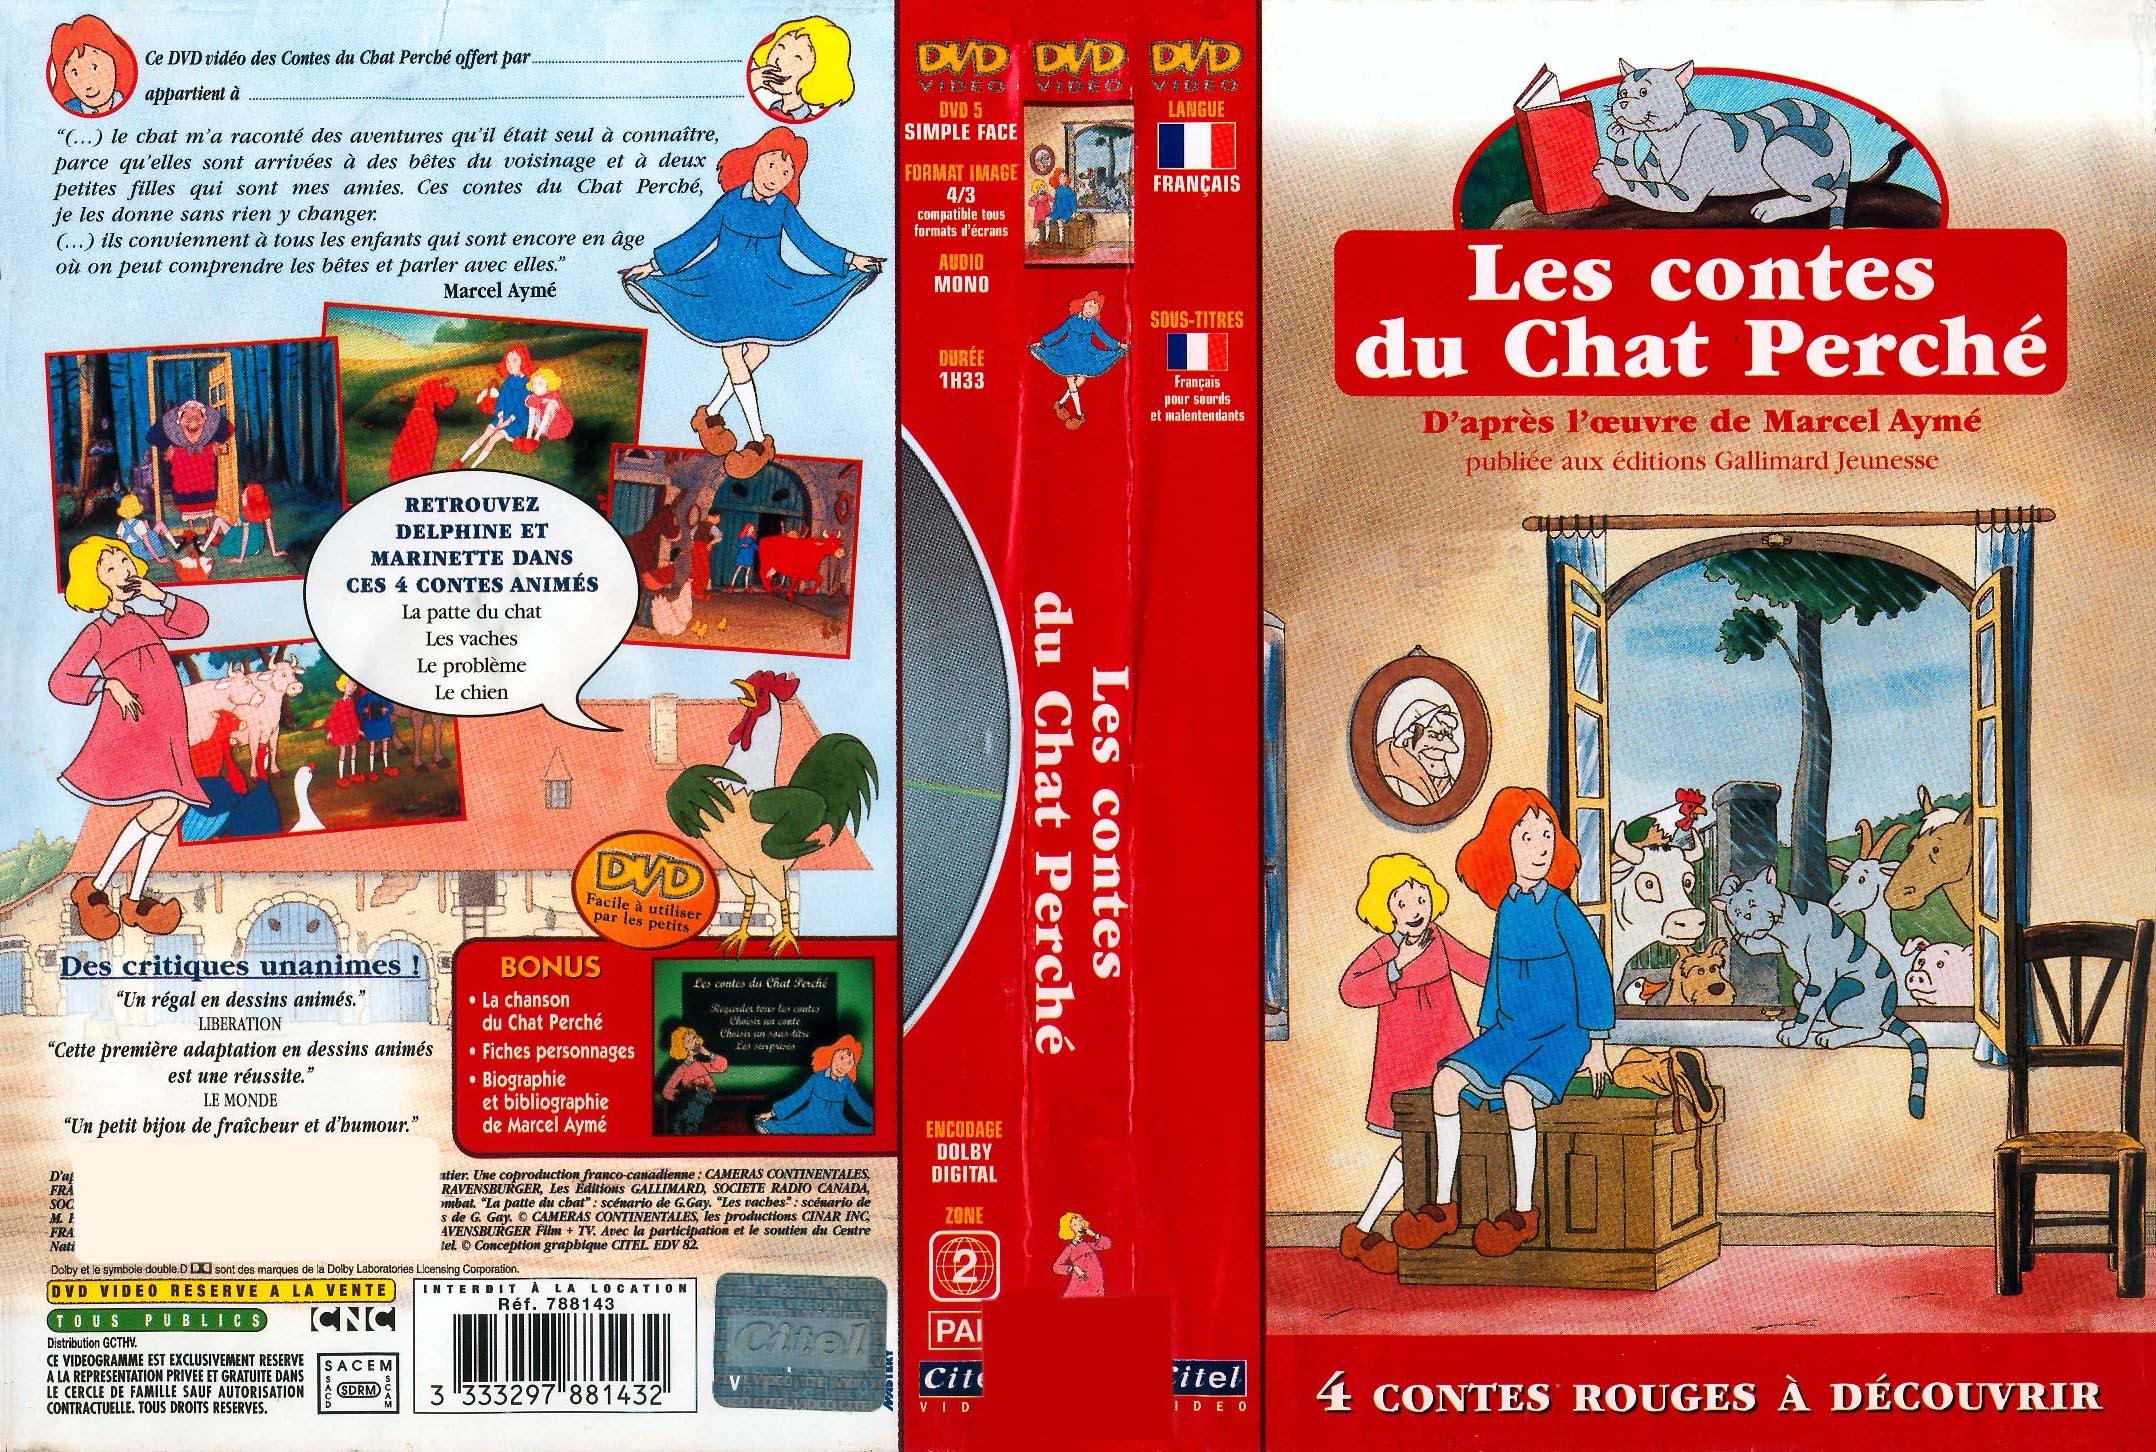 Jaquette DVD Les contes du chat perche (rouge)